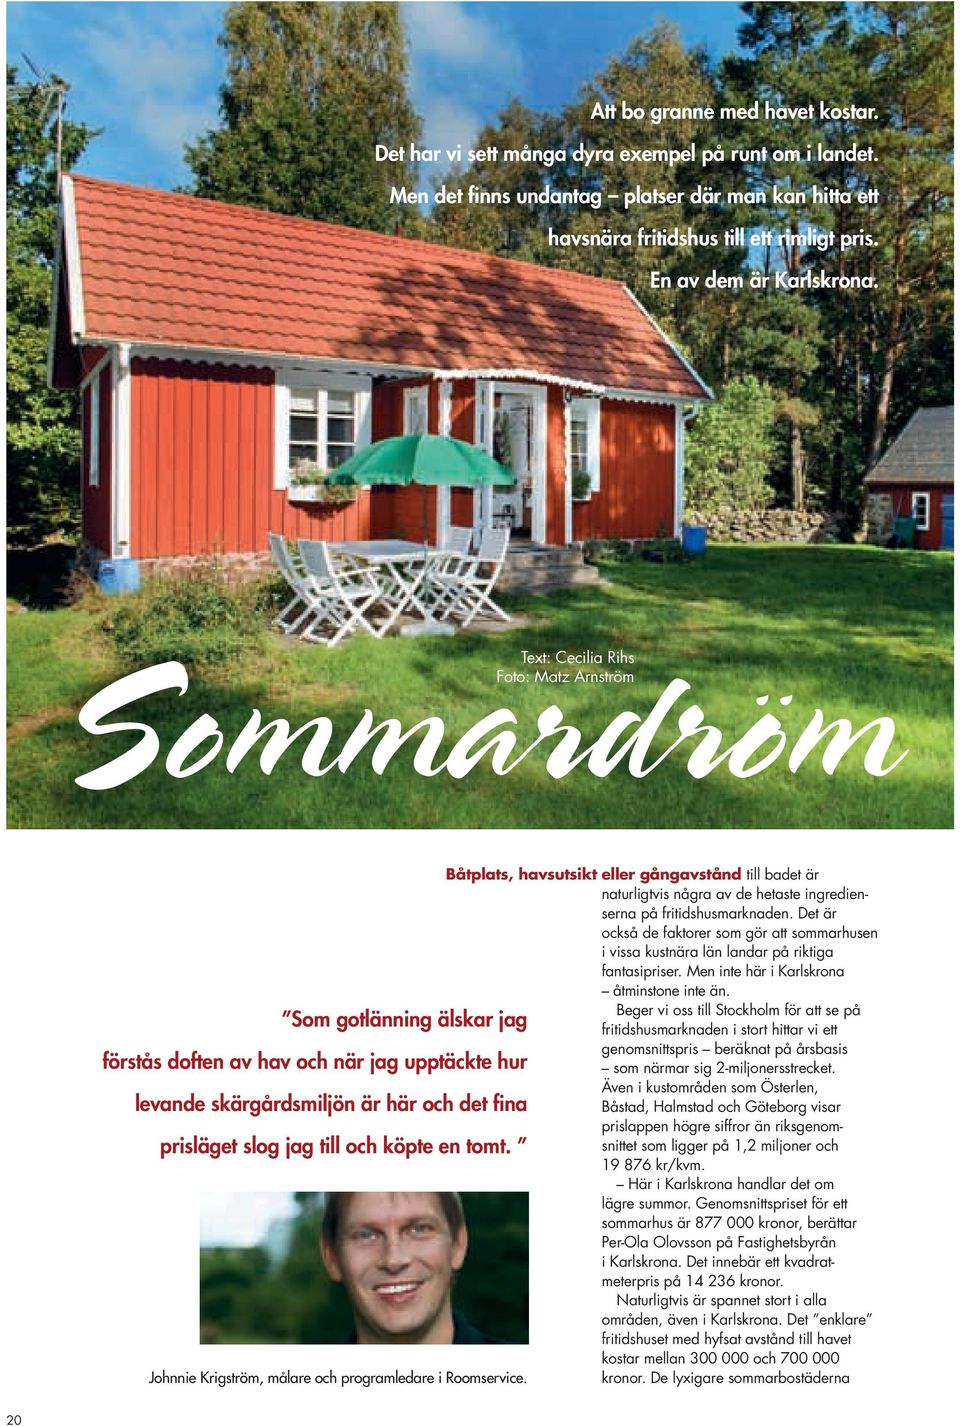 Det är också de faktorer som gör att sommarhusen i vissa kustnära län landar på riktiga fantasipriser. Men inte här i Karlskrona åtminstone inte än.